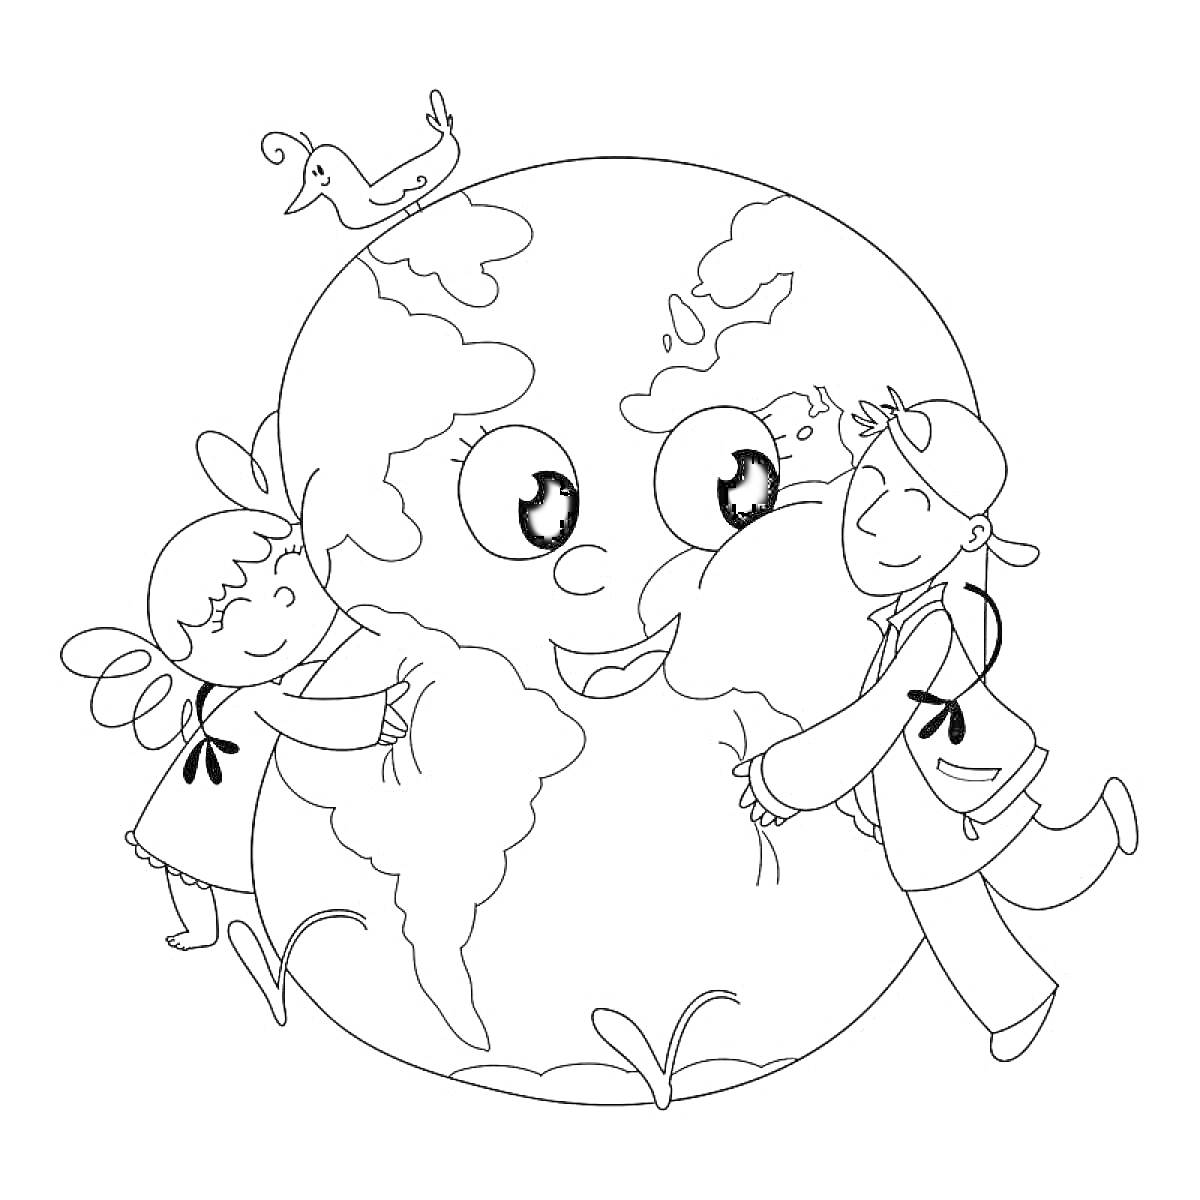 Земной шар с лицом и дети, обнимающие его, рядом птица